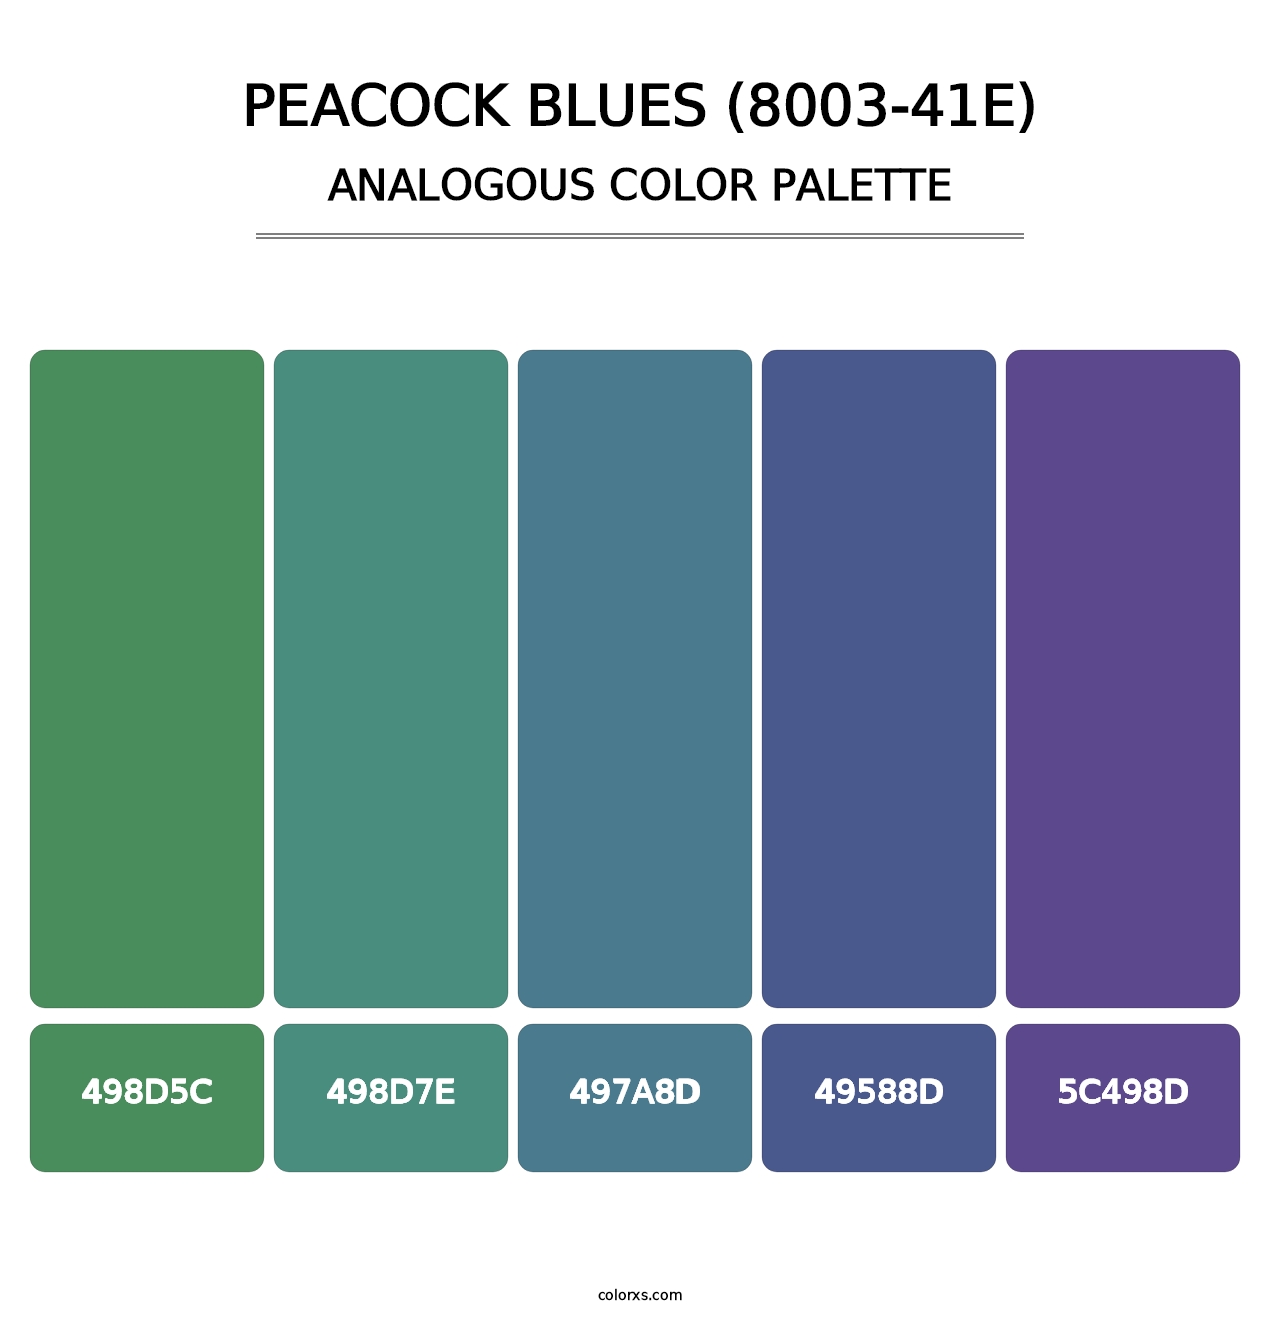 Peacock Blues (8003-41E) - Analogous Color Palette